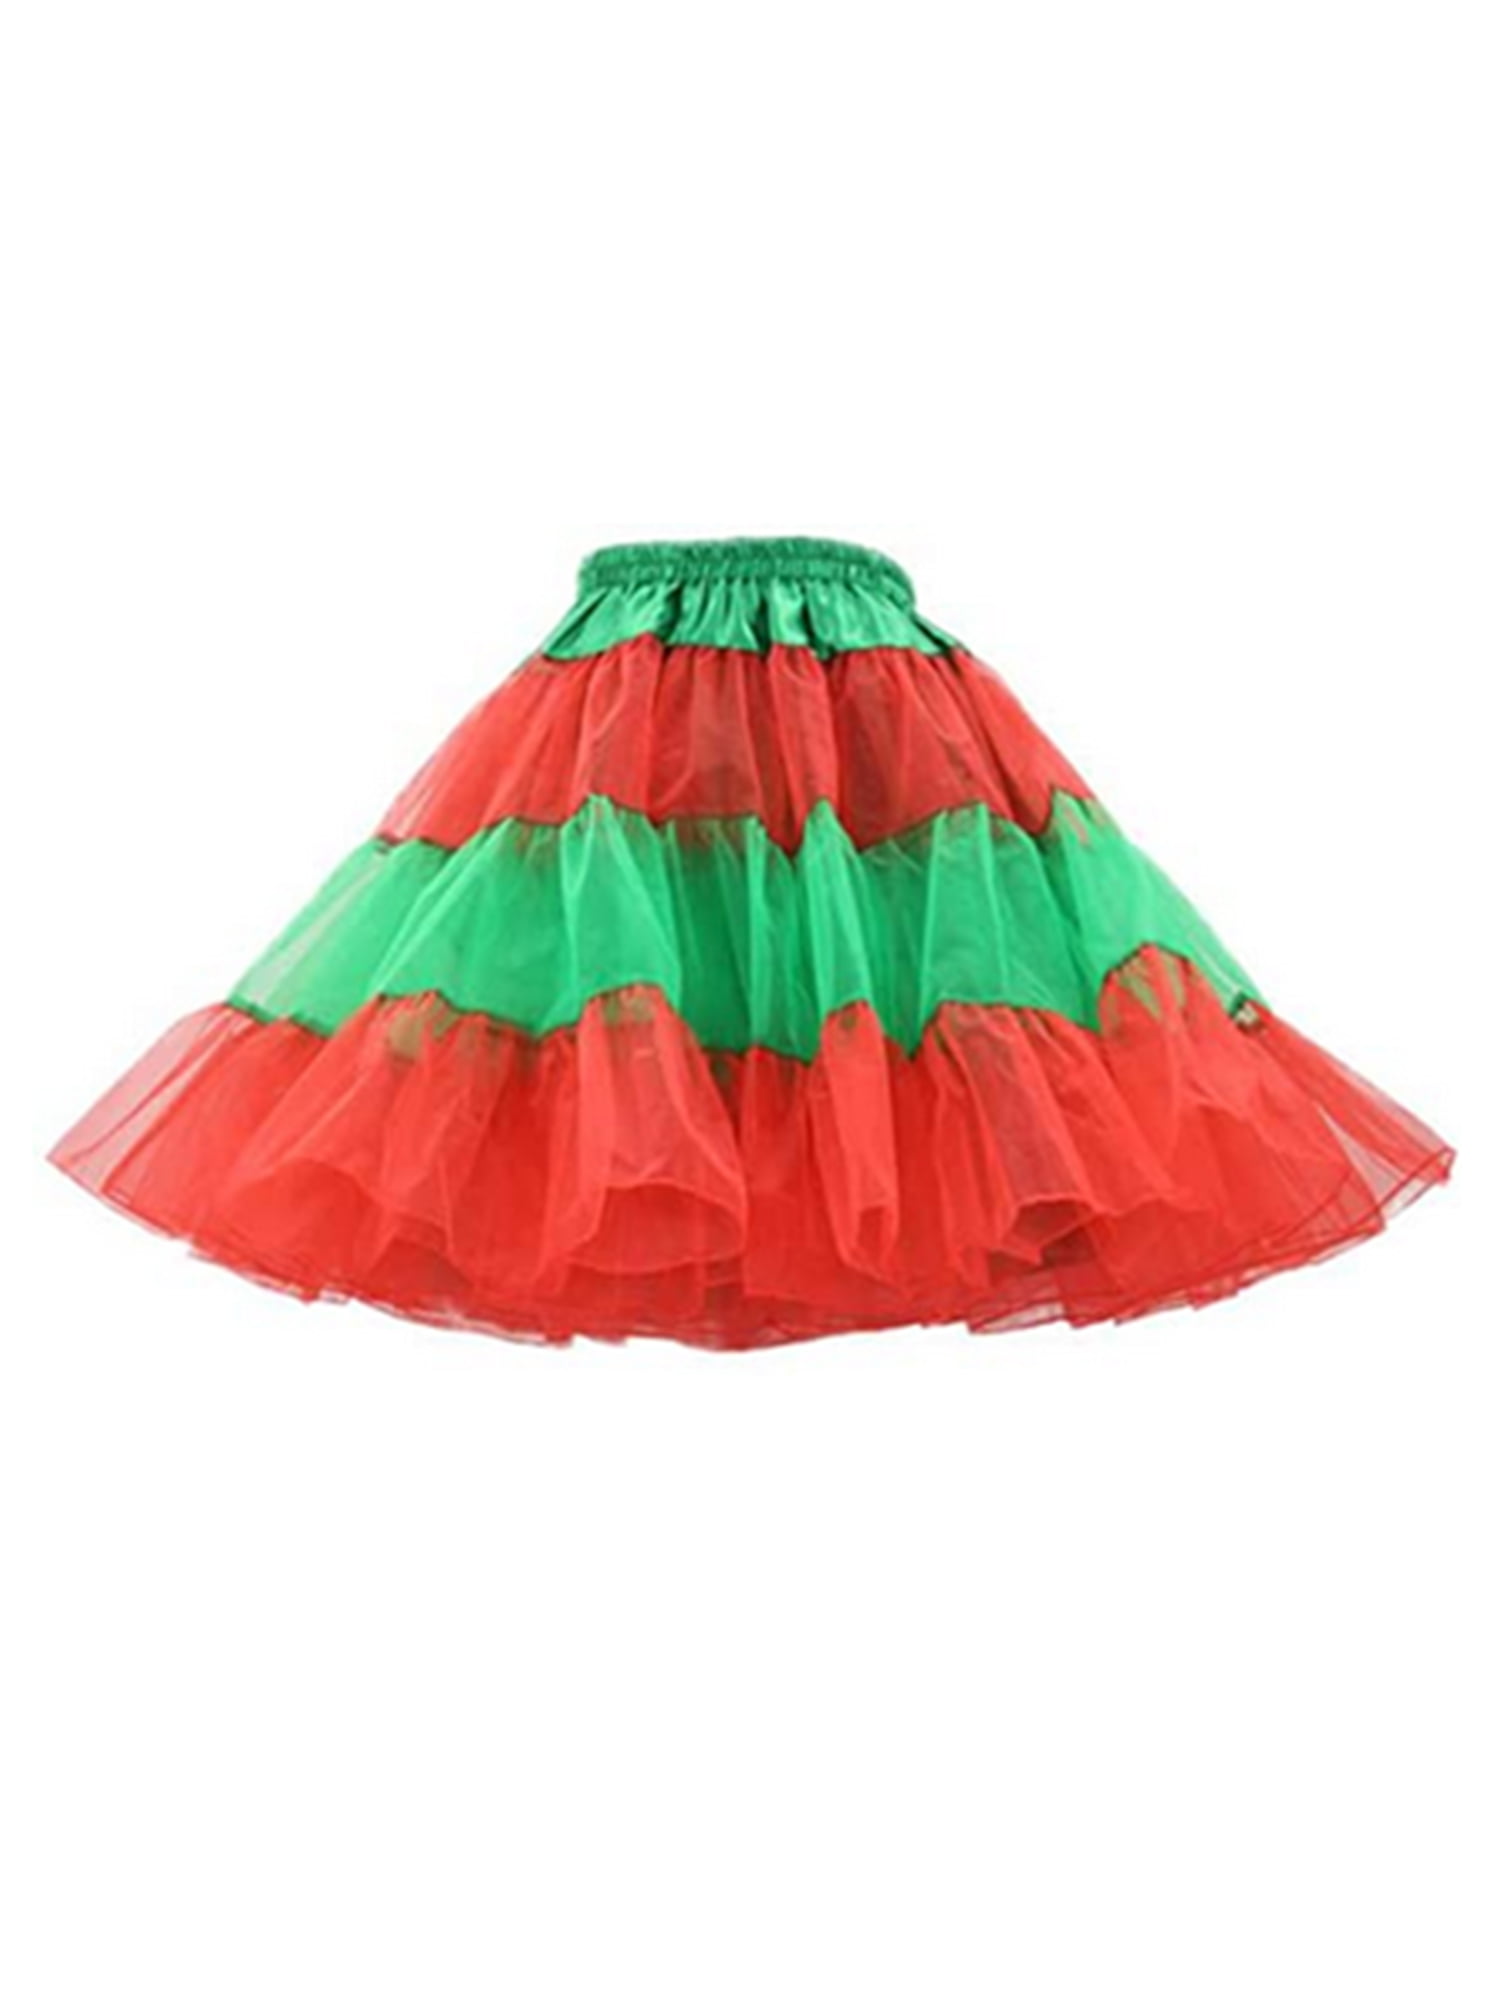 Kids Tutu Pettiskirt Party Rainbow Elasticity Fluffy Dance Ballet Performance Colours Costume Skirt+Floral Fishtail Set DEELIN Tutu Skirt for Girls